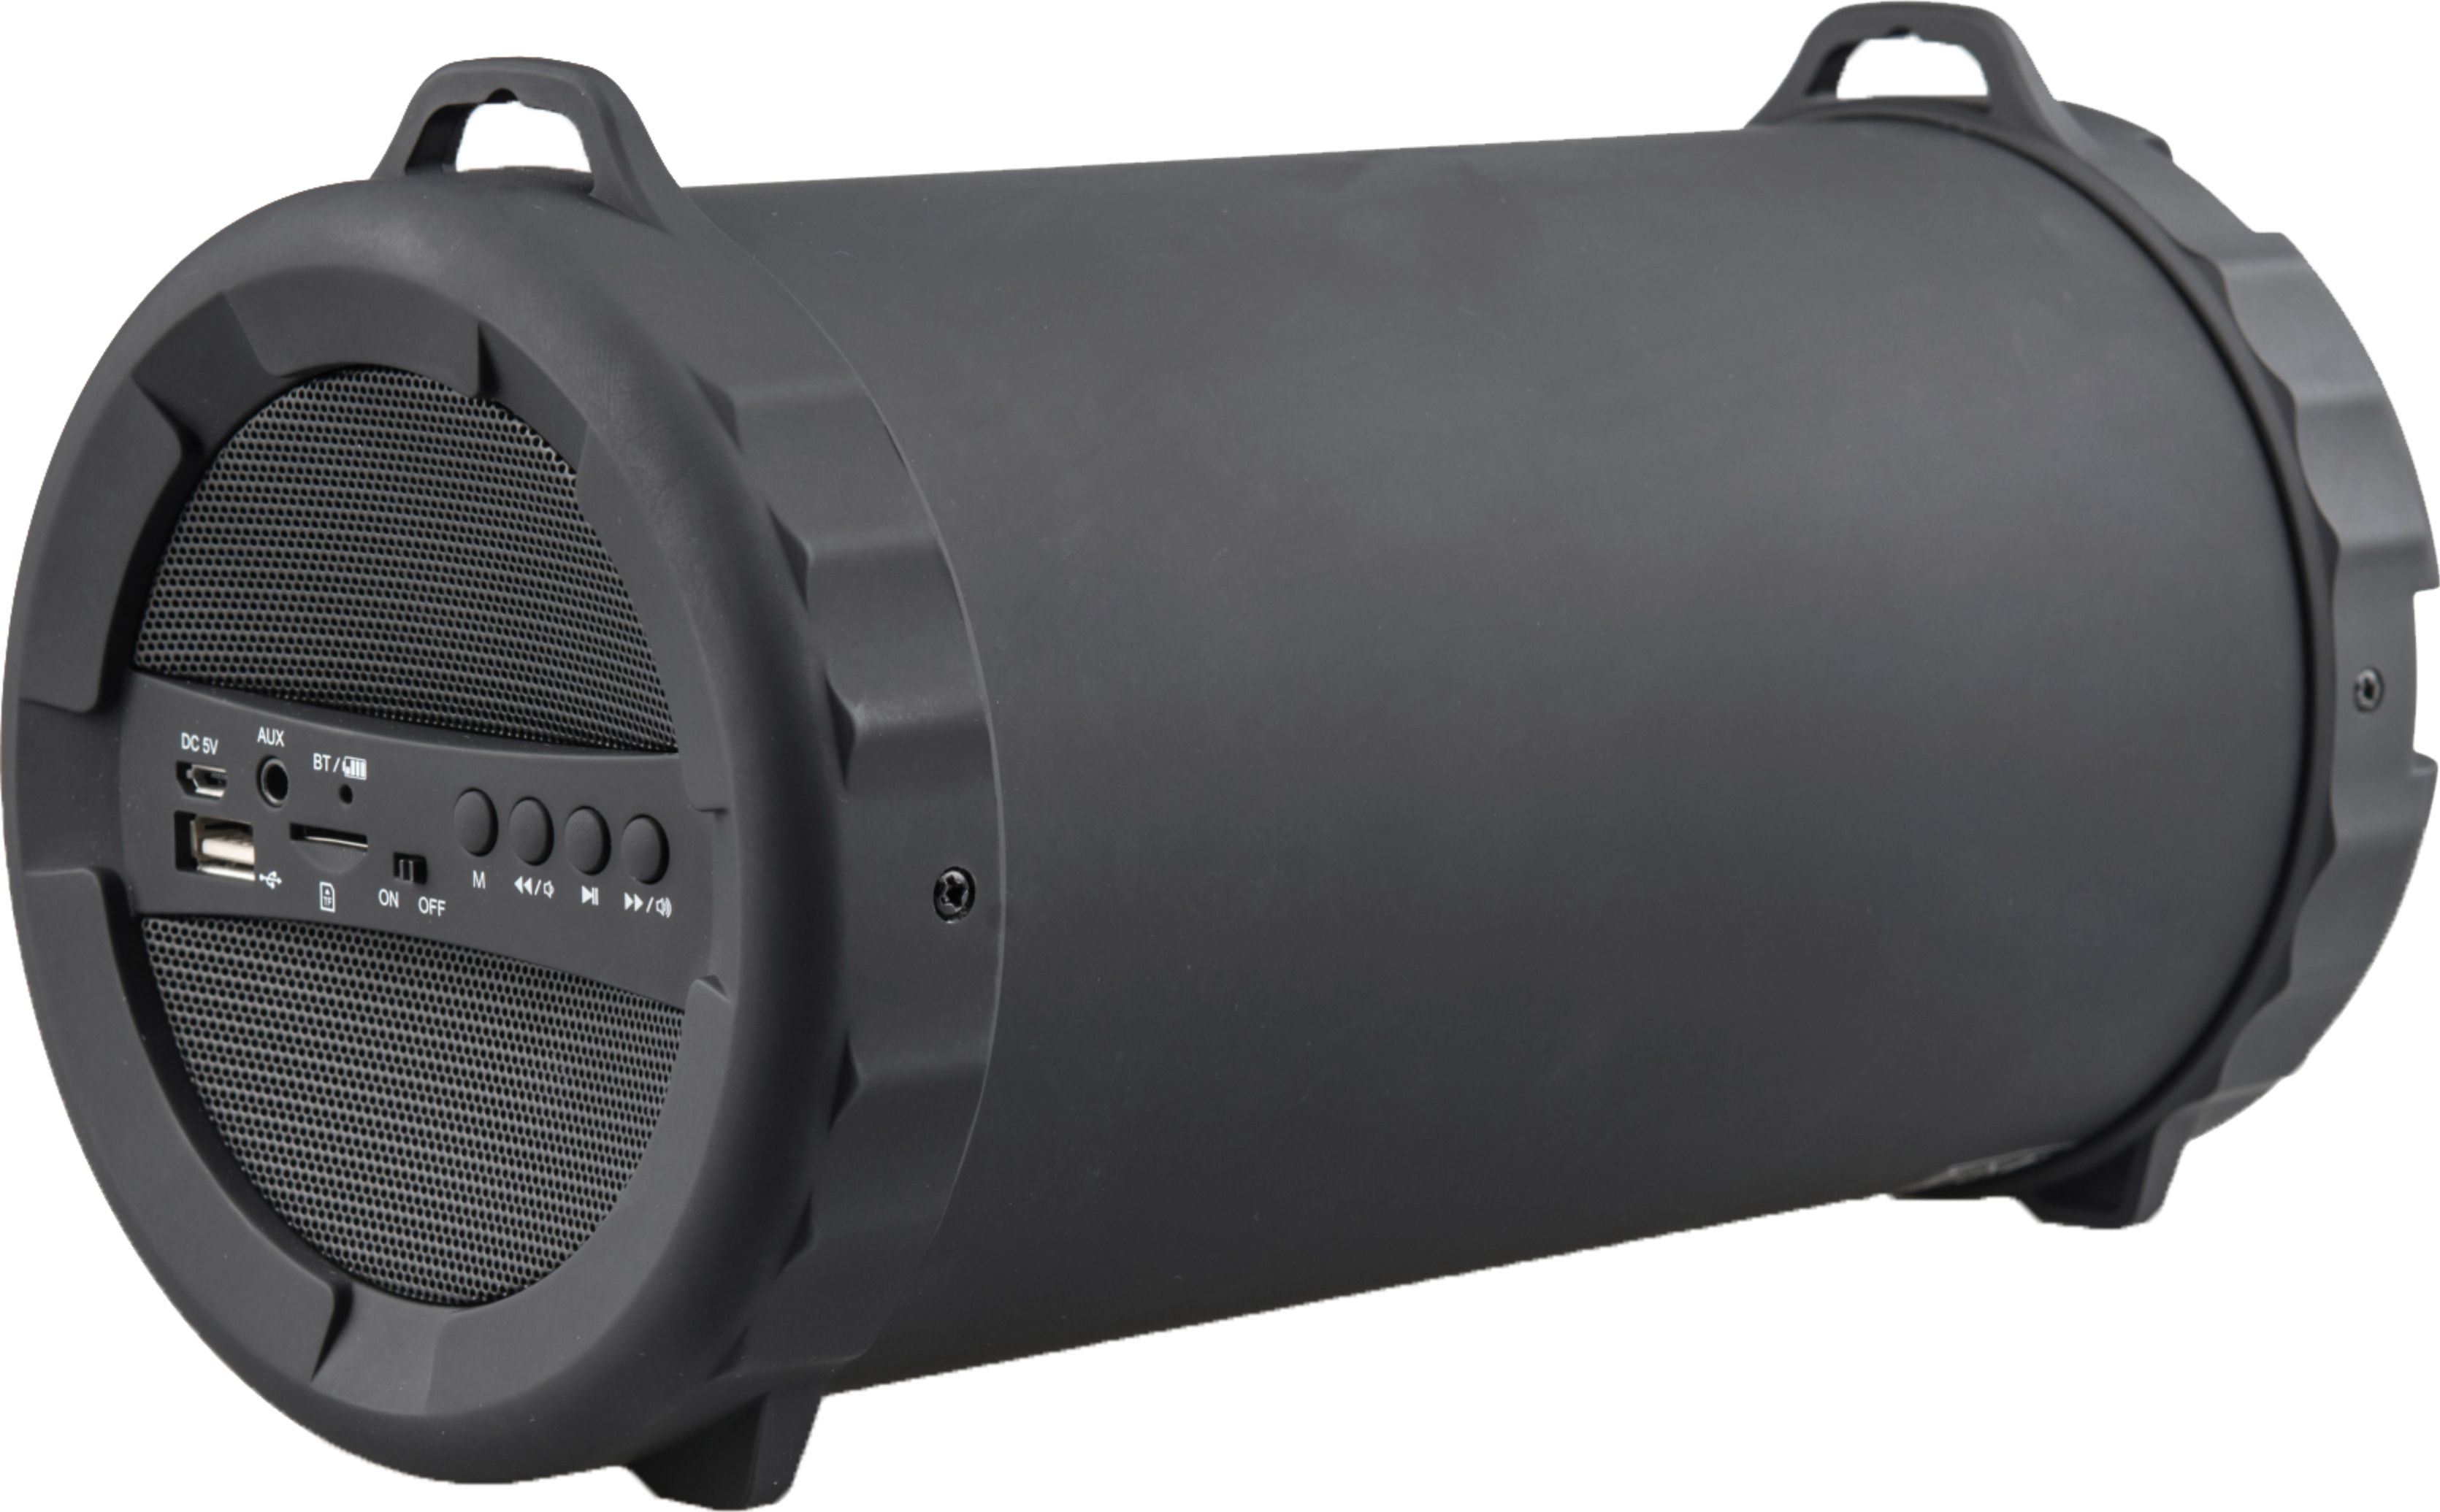 JVC XS-XN15 Bluetooth Speaker